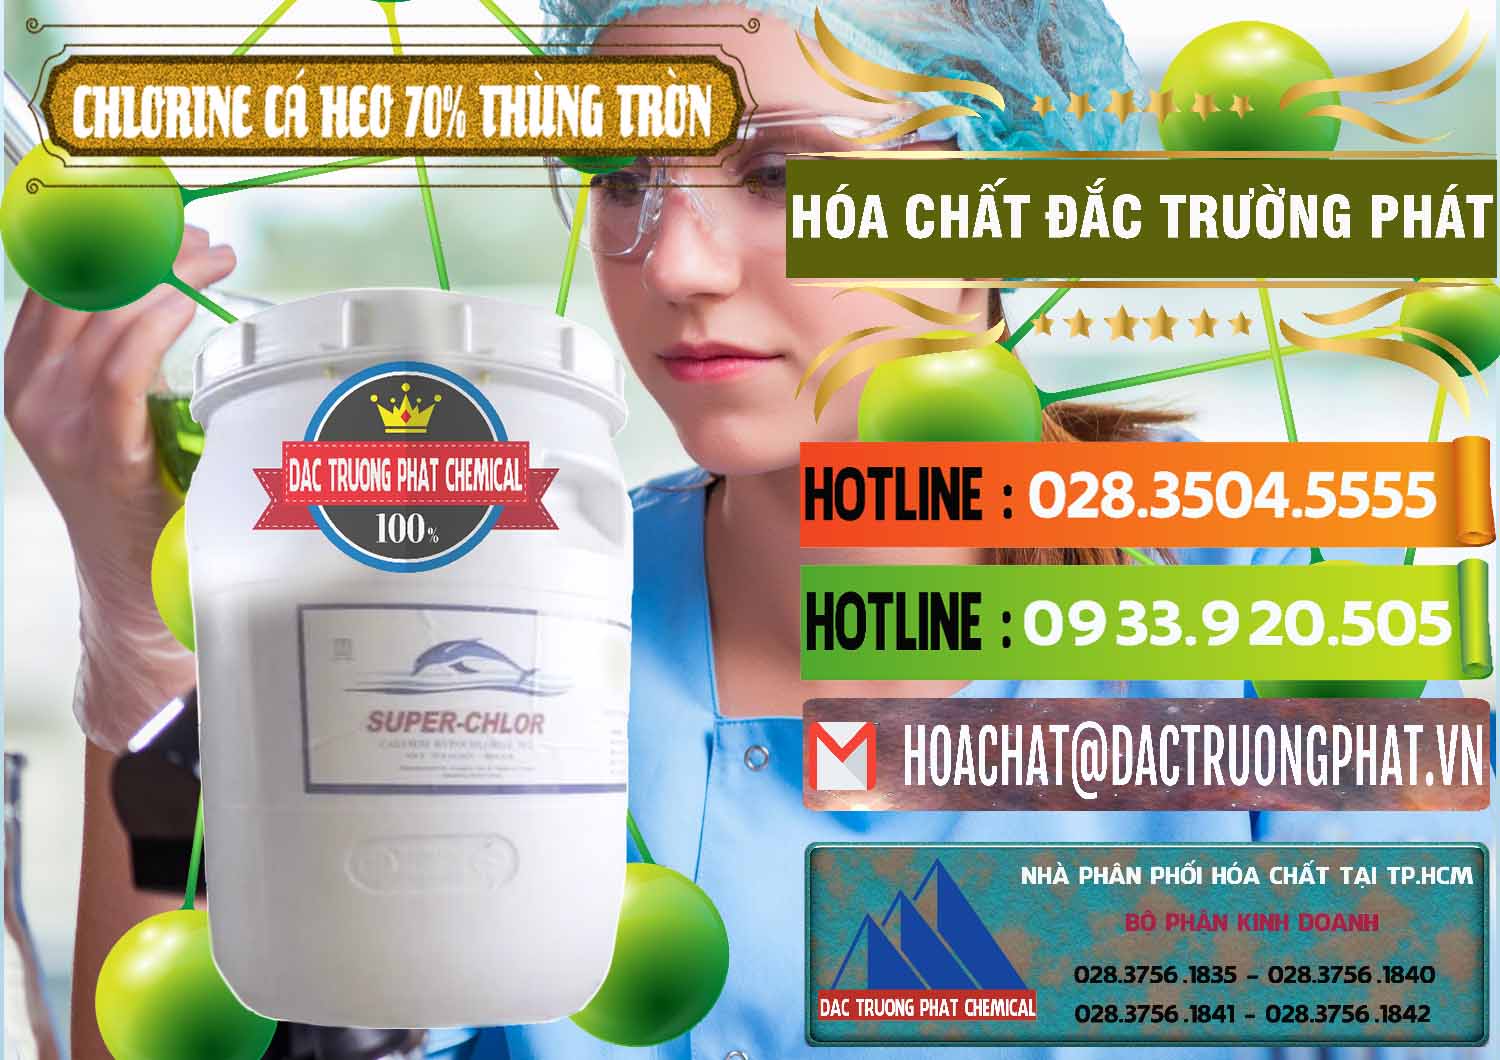 Công ty bán _ cung cấp Clorin - Chlorine Cá Heo 70% Super Chlor Thùng Tròn Nắp Trắng Trung Quốc China - 0239 - Chuyên cung cấp _ nhập khẩu hóa chất tại TP.HCM - cungcaphoachat.com.vn